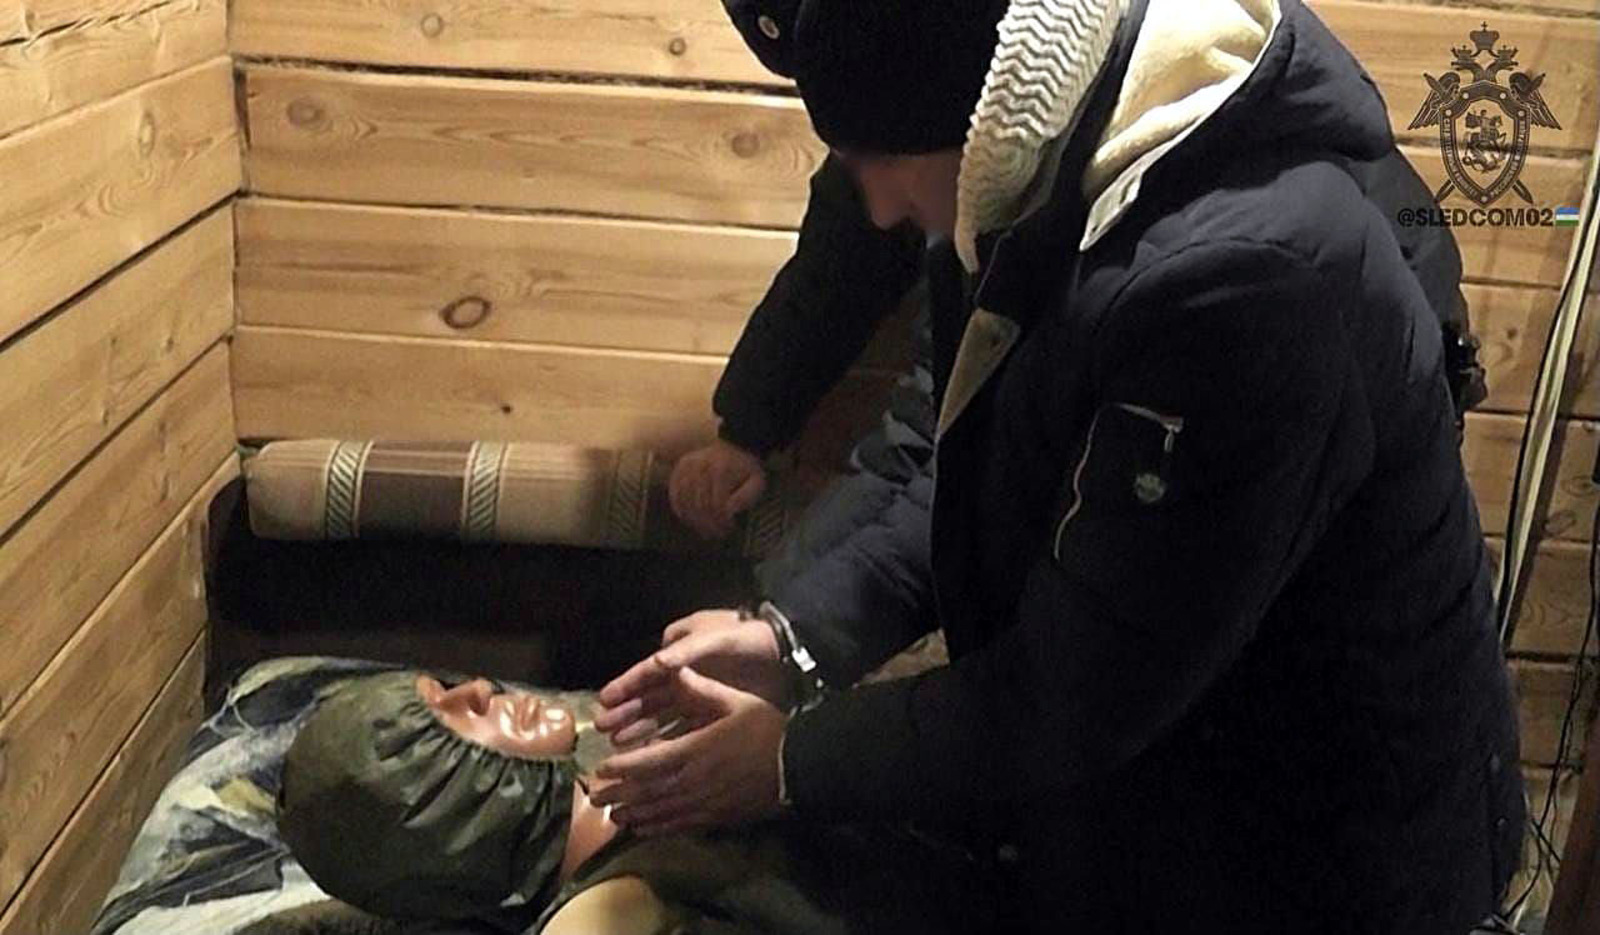 Житель Башкирии задушил гостью, расчленил её тело и вывез в лес в пакетах